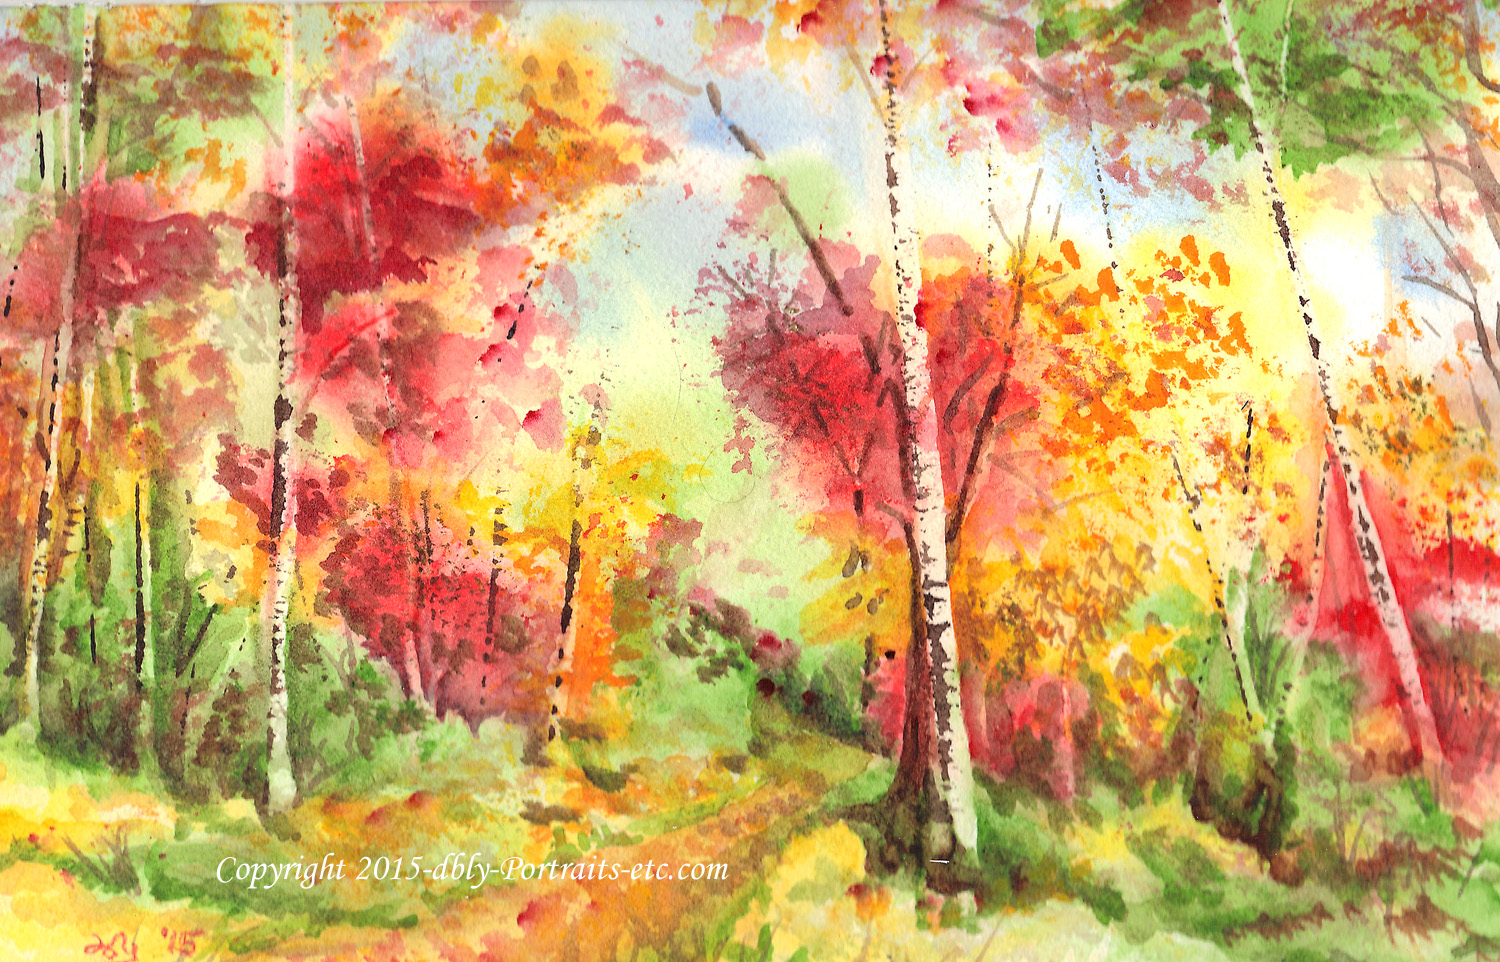 Autumn Trees 2